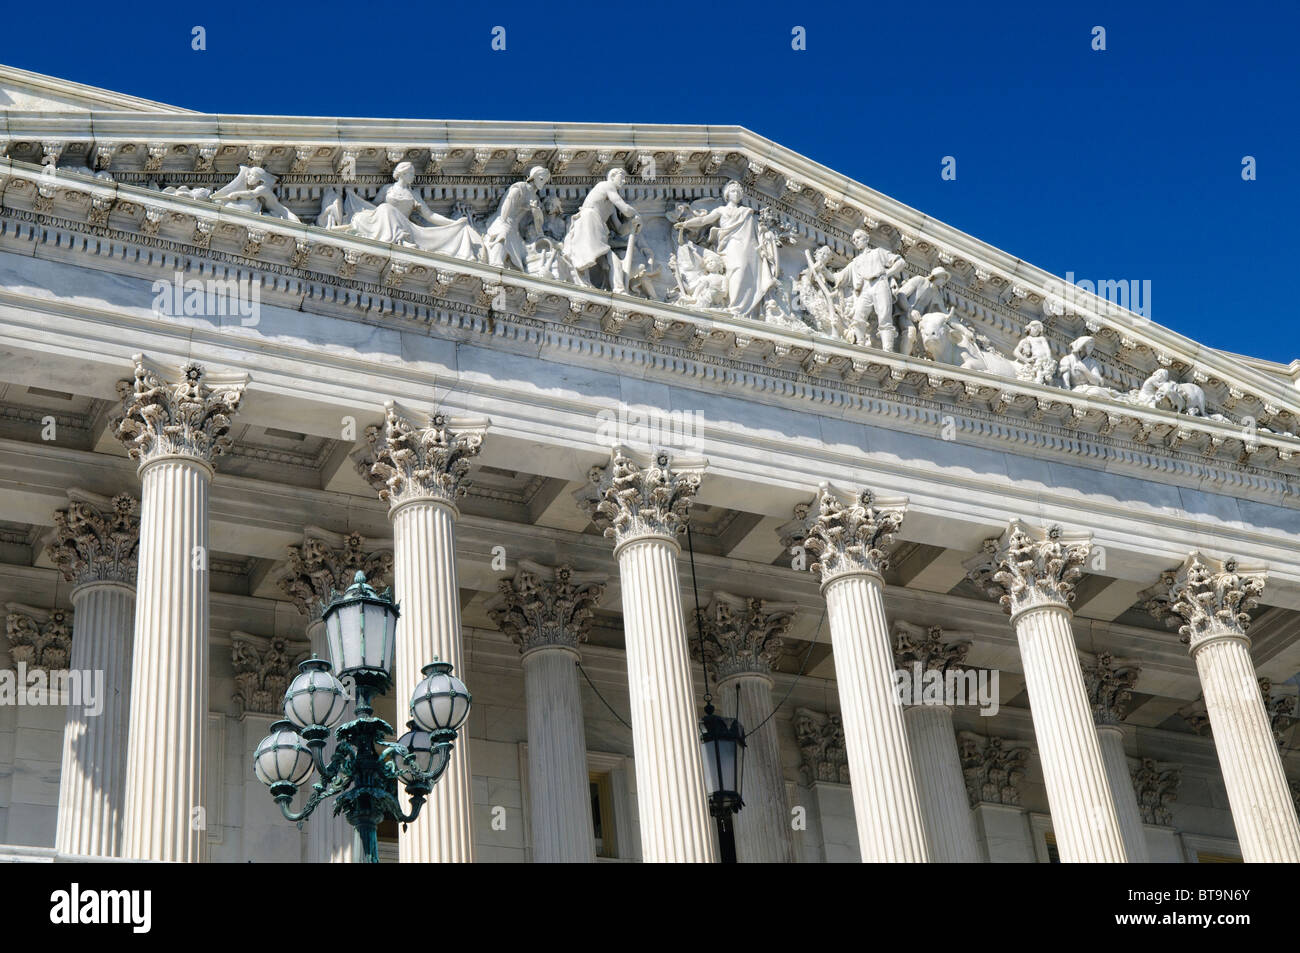 WASHINGTON DC, USA - Chambre des représentants au Capitole, Capitol Hill, Washington DC Banque D'Images